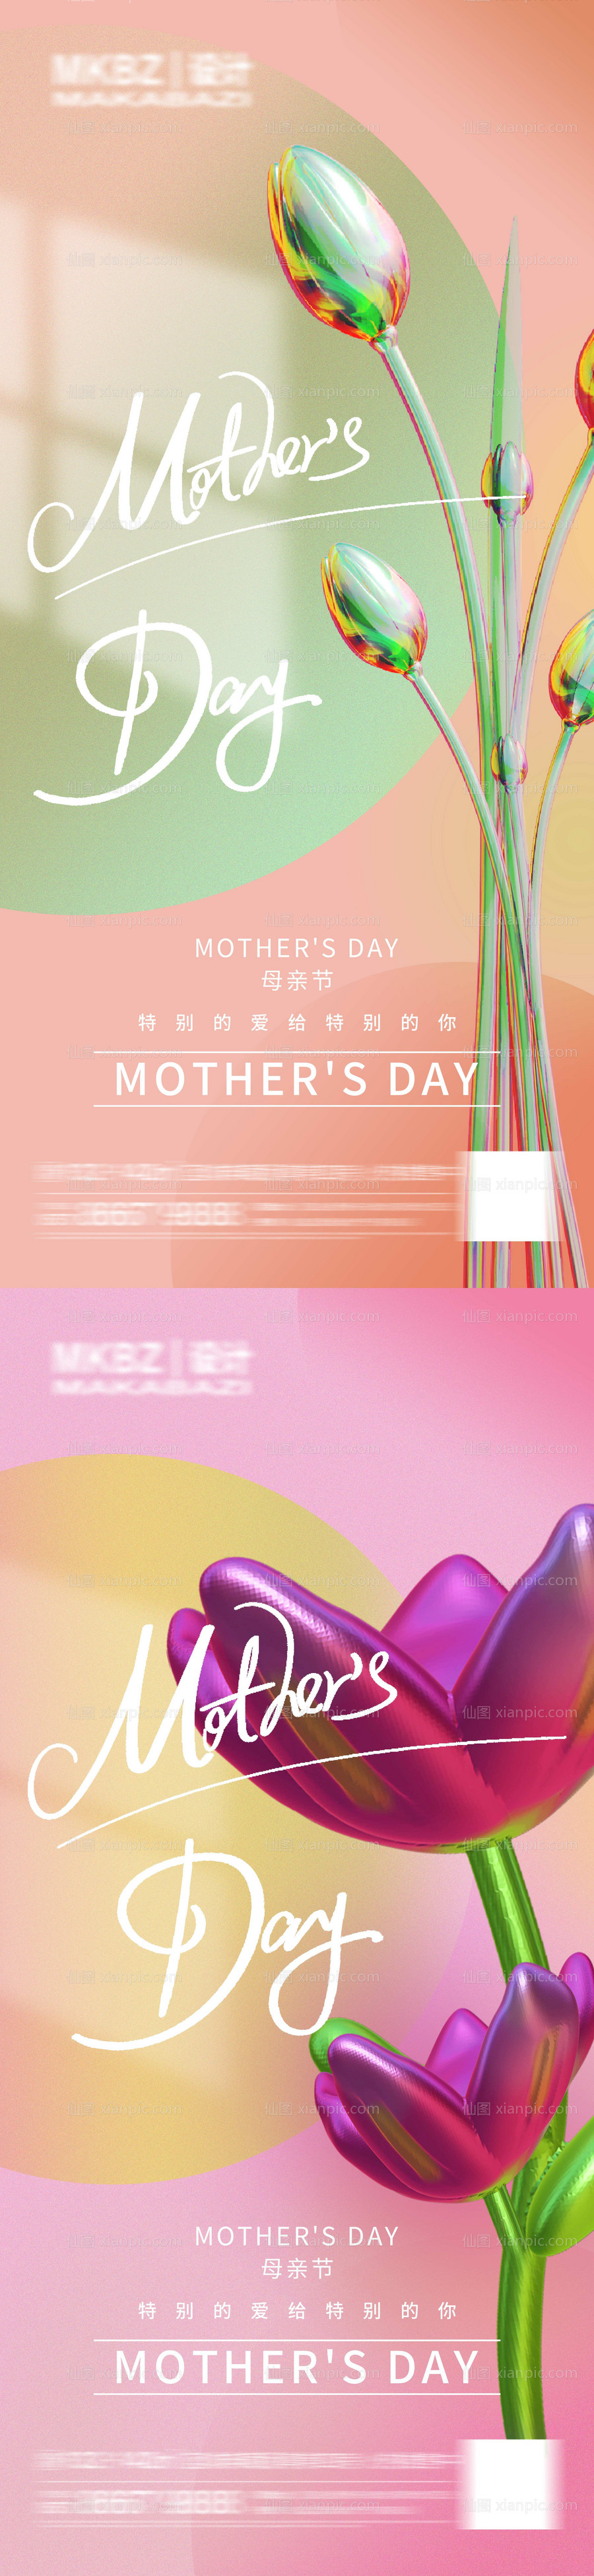 素材乐-母亲节系列海报